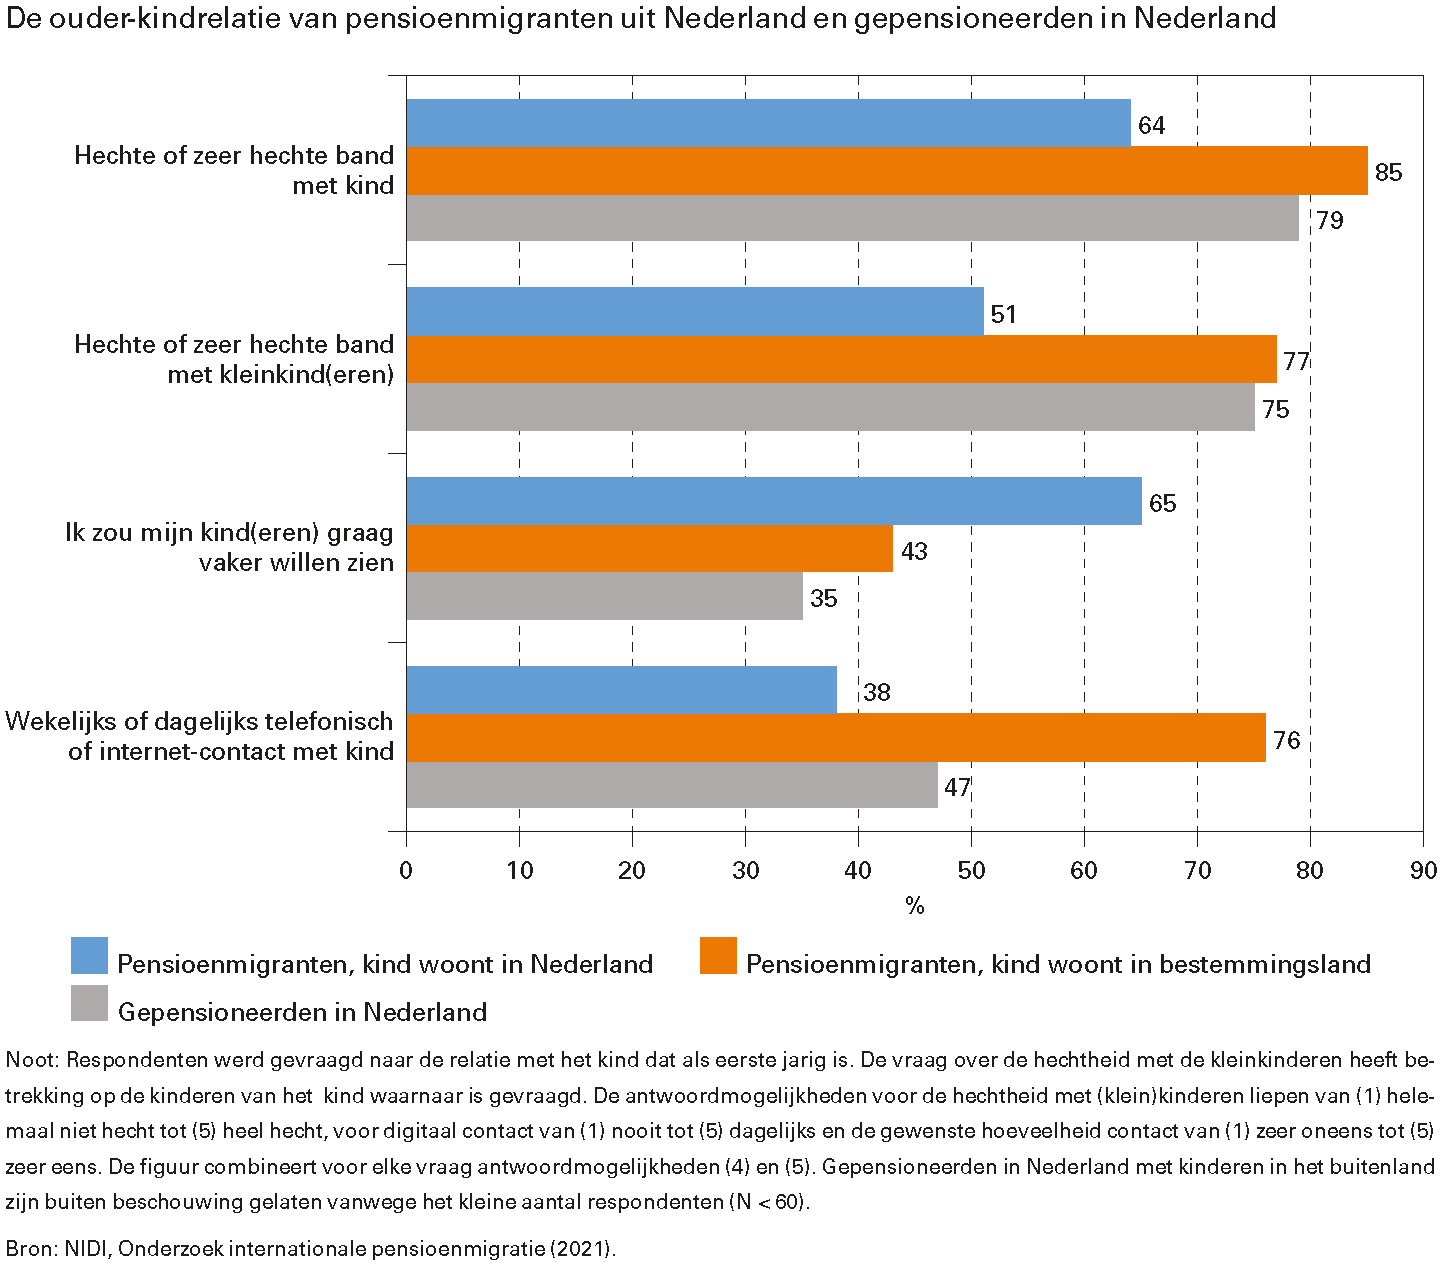 De ouder-kindrelatie van pensioenmigranten uit Nederland en gepensioneerden in Nederland